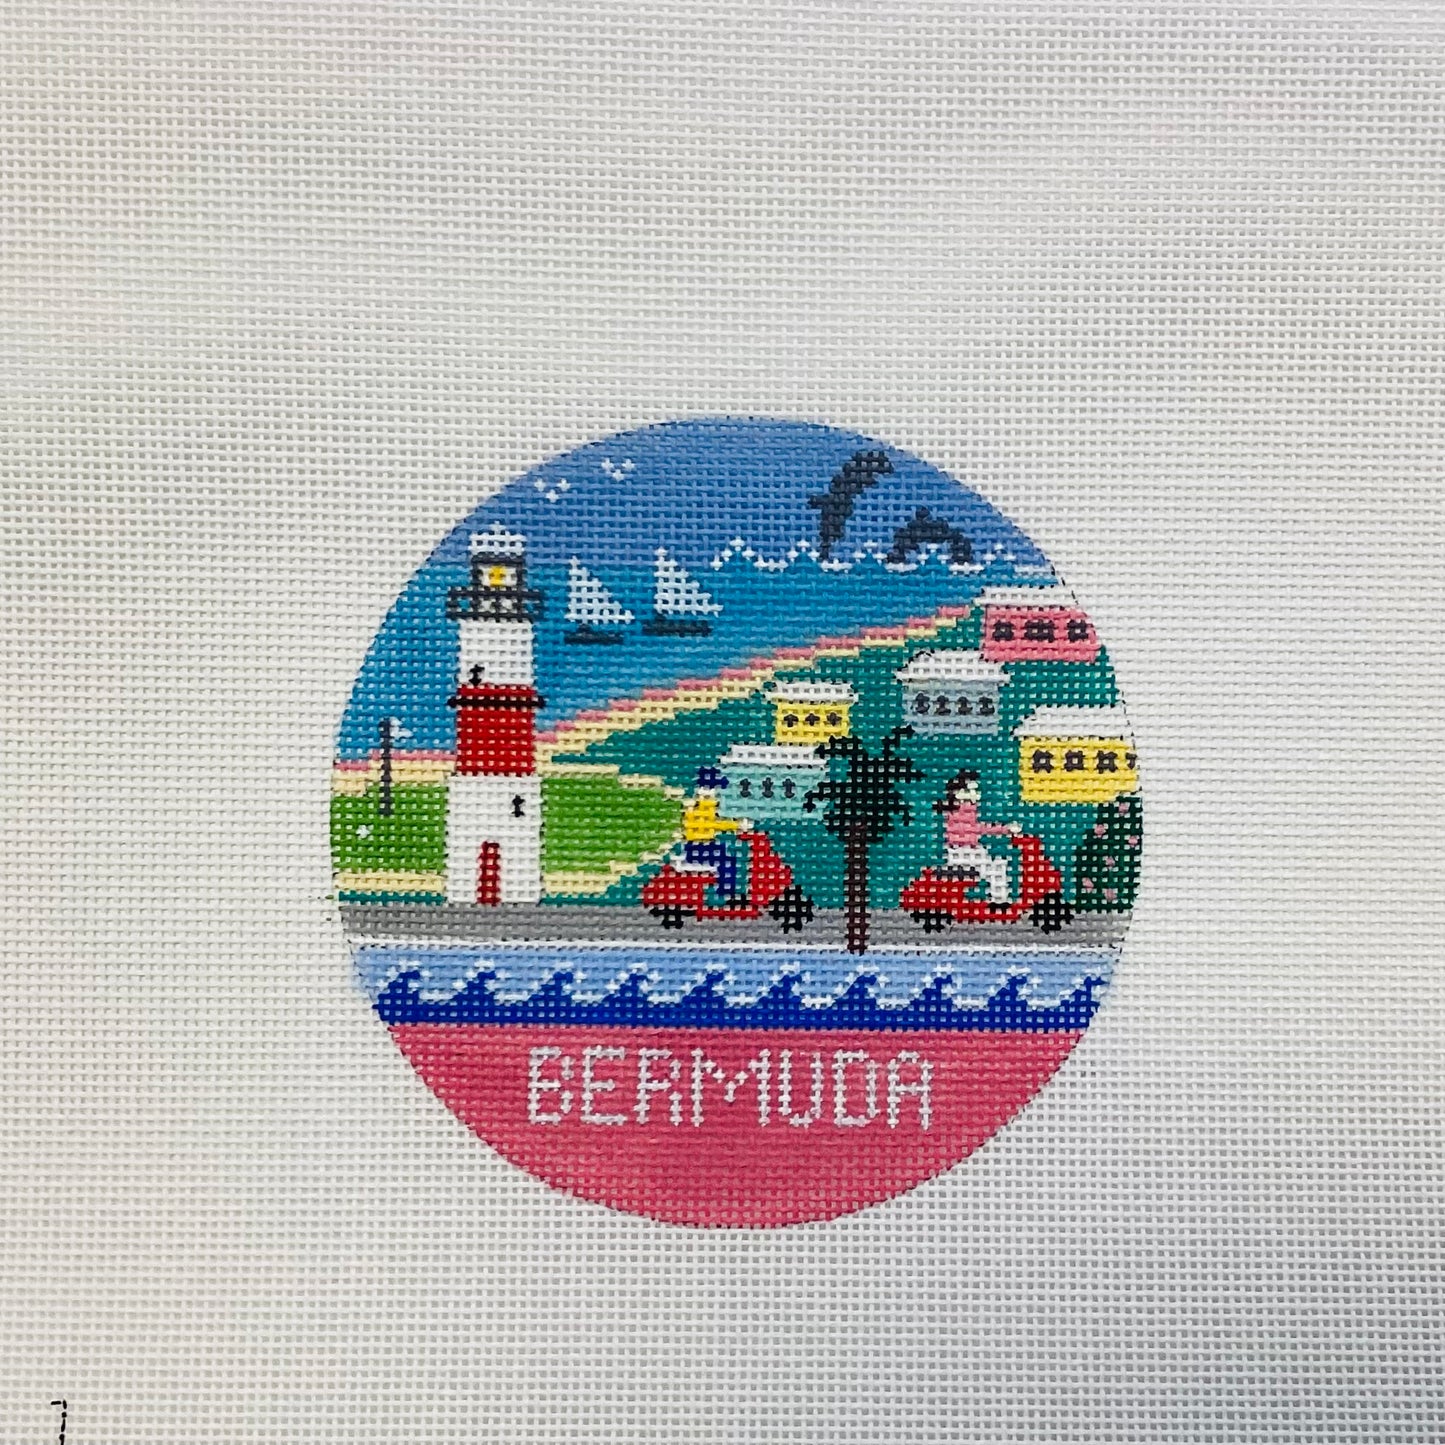 Bermuda Round DS